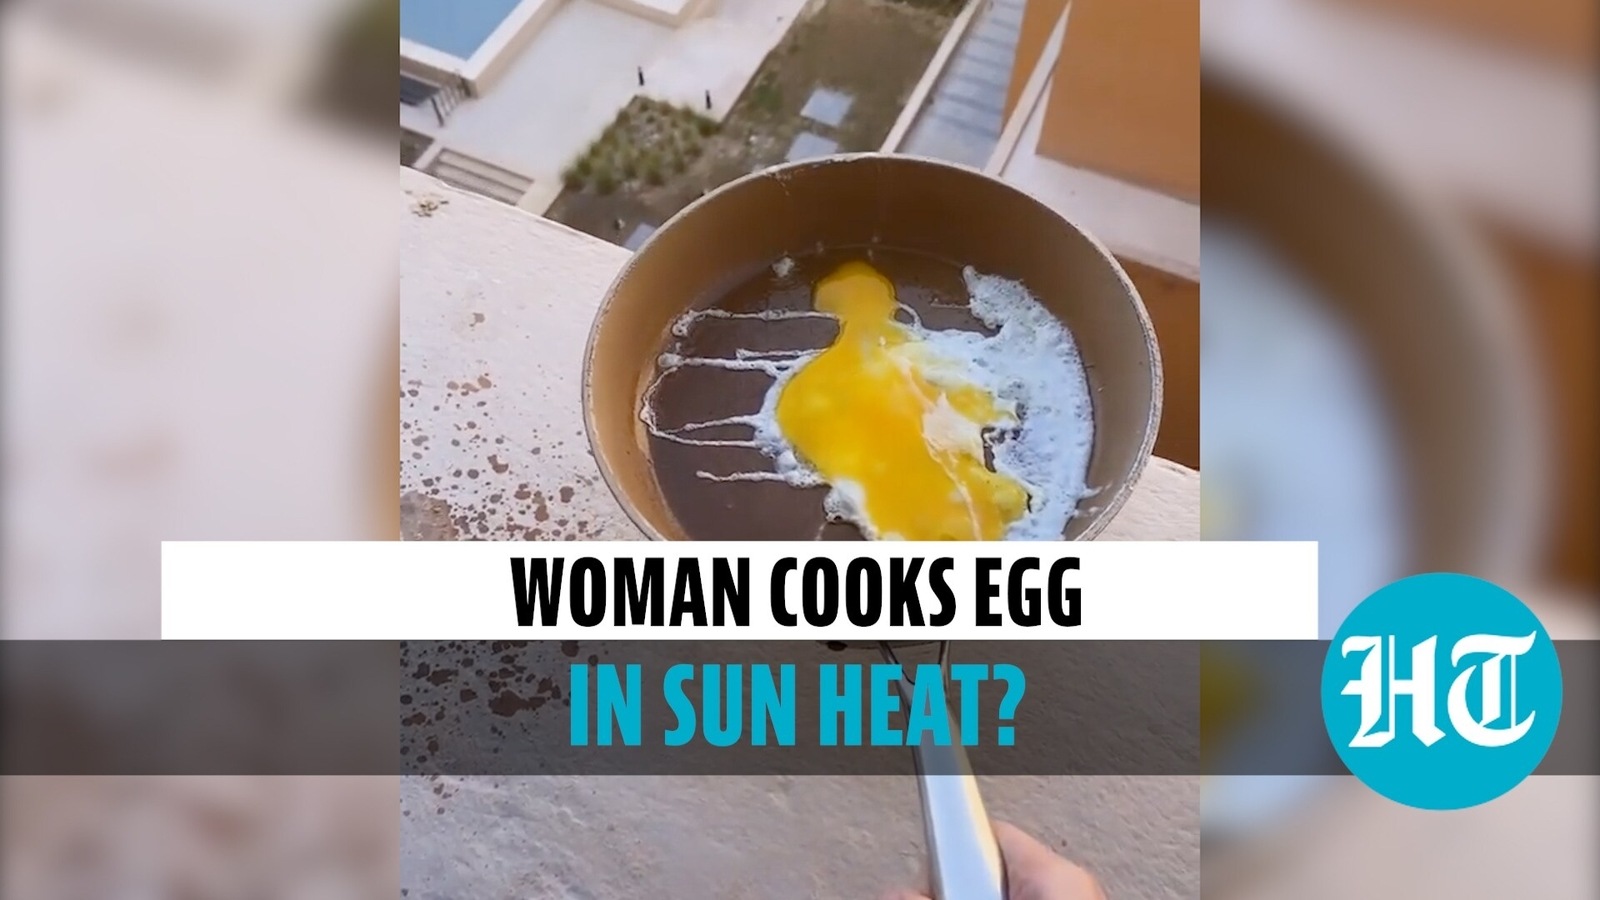 Vidéo virale : une dame qatarie faisant frire des œufs sous le soleil, les internautes se demandent si c’est vrai